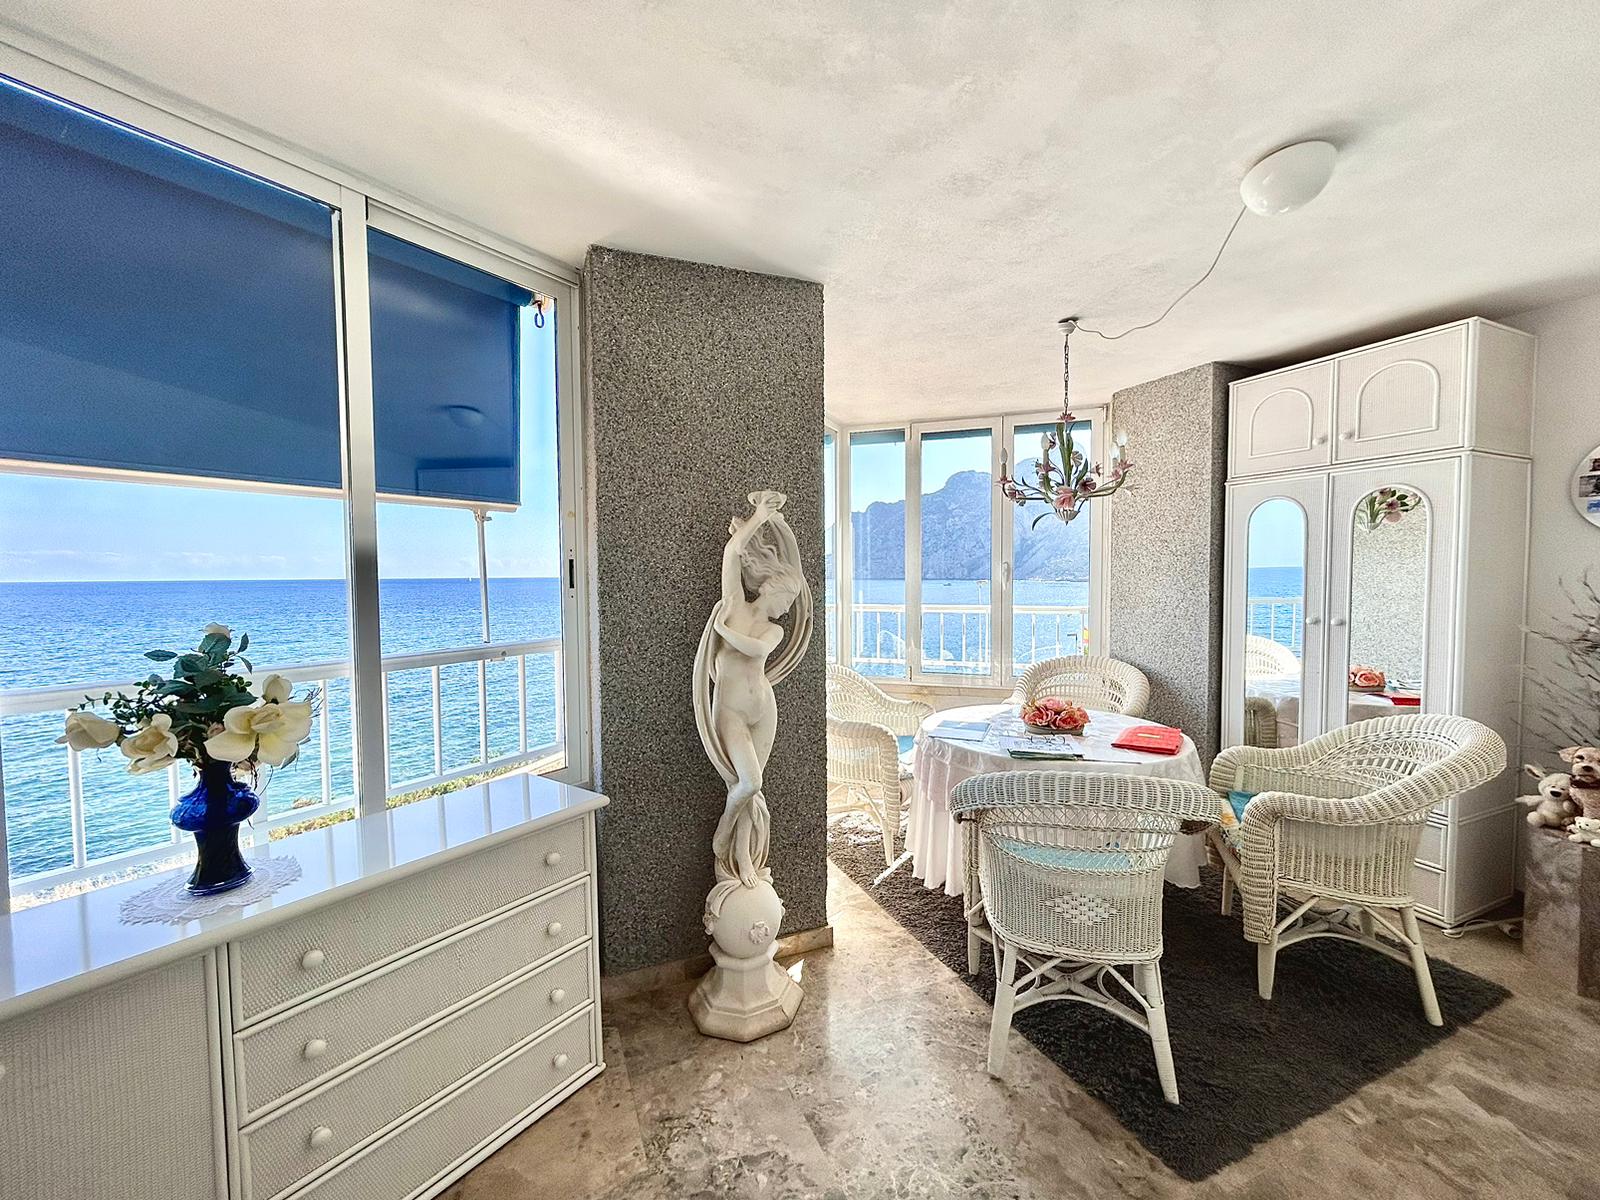 Calpe : Apartamento en 1ª línea con preciosas vistas al mar